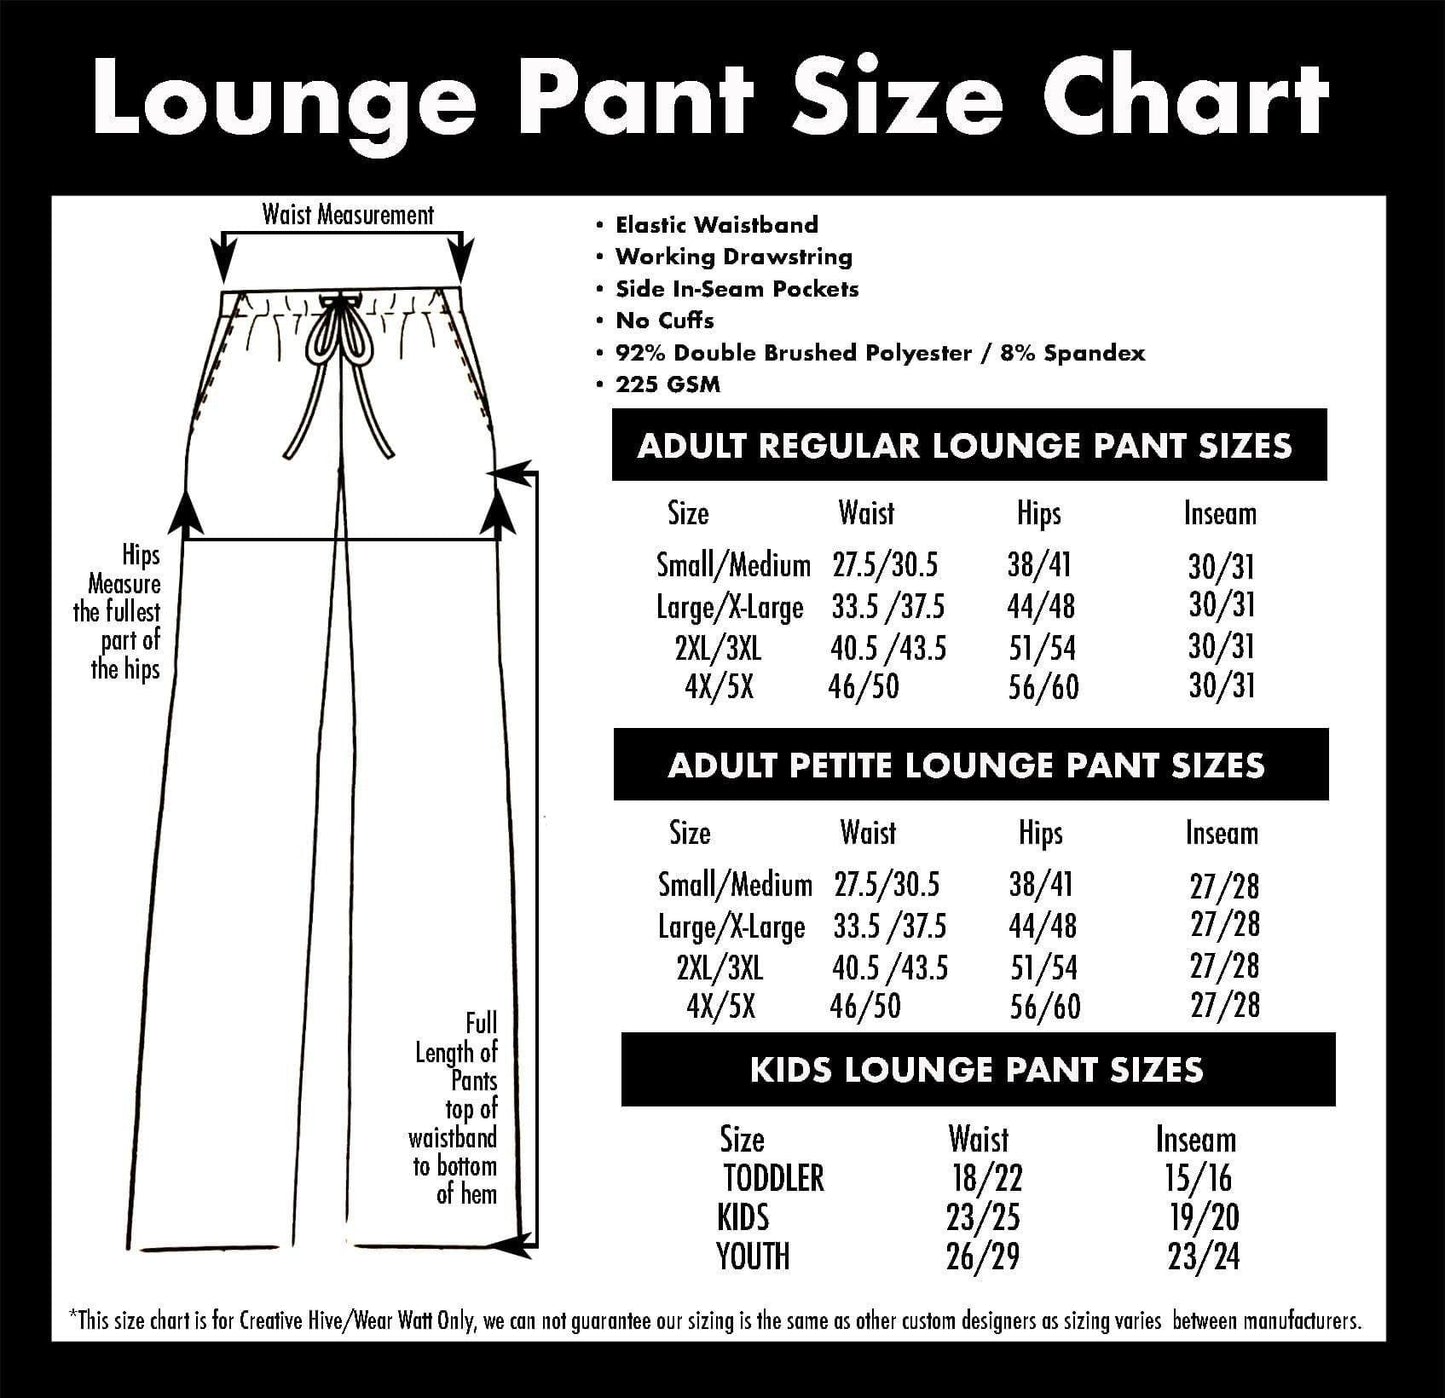 Royal Blue *Color Collection* - Lounge Pants - That’s So Fletch Boutique 